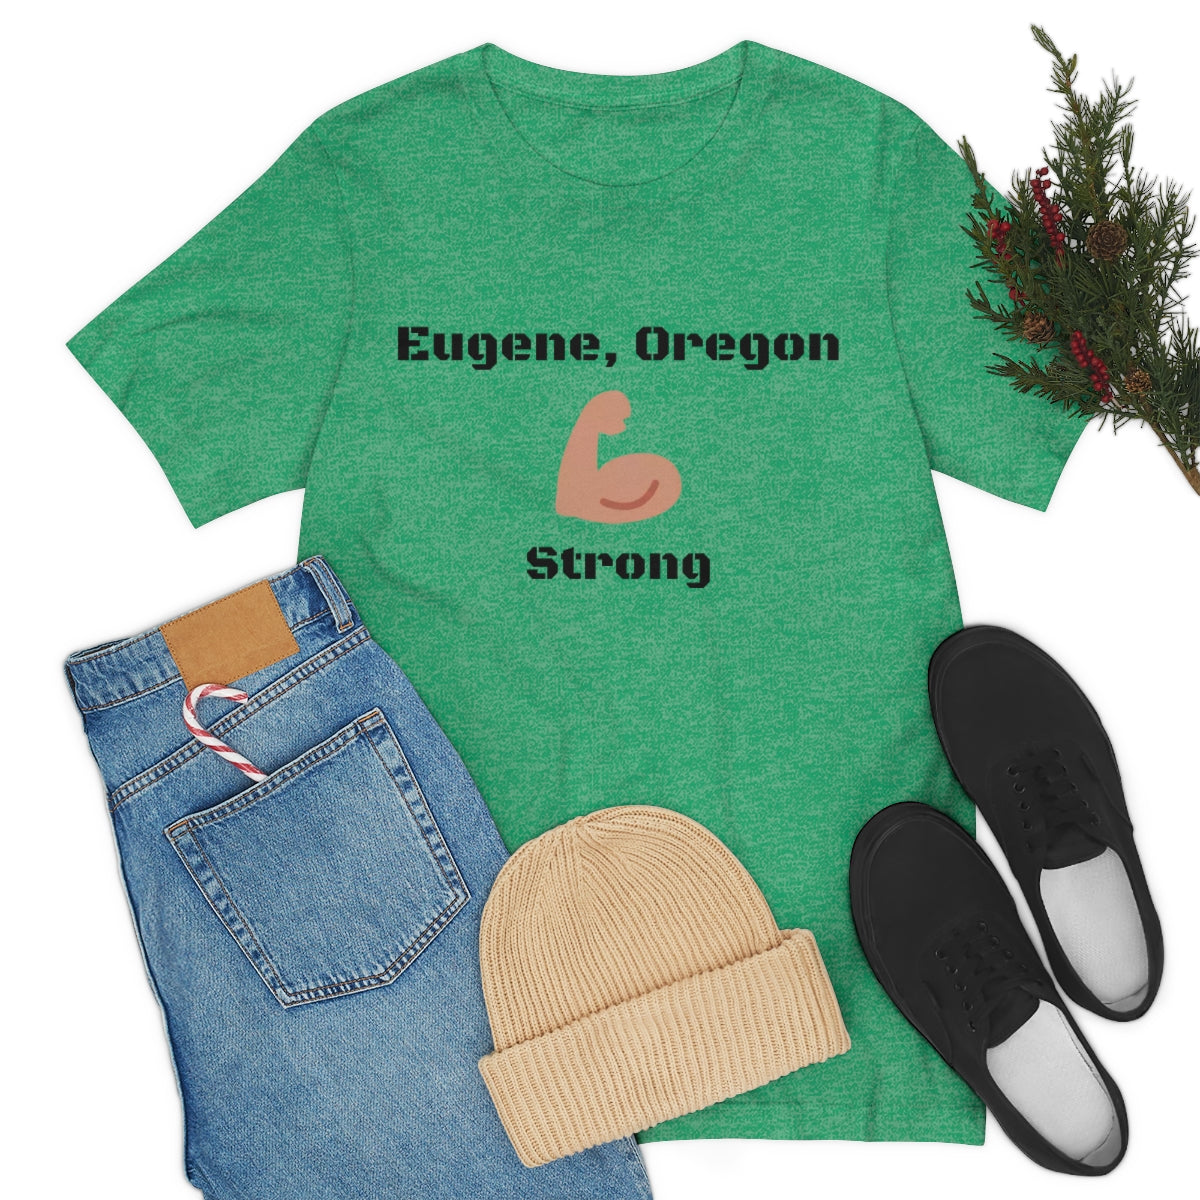 Eugene, Oregon Strong - Designed - Unisex Short Sleeve Tee.